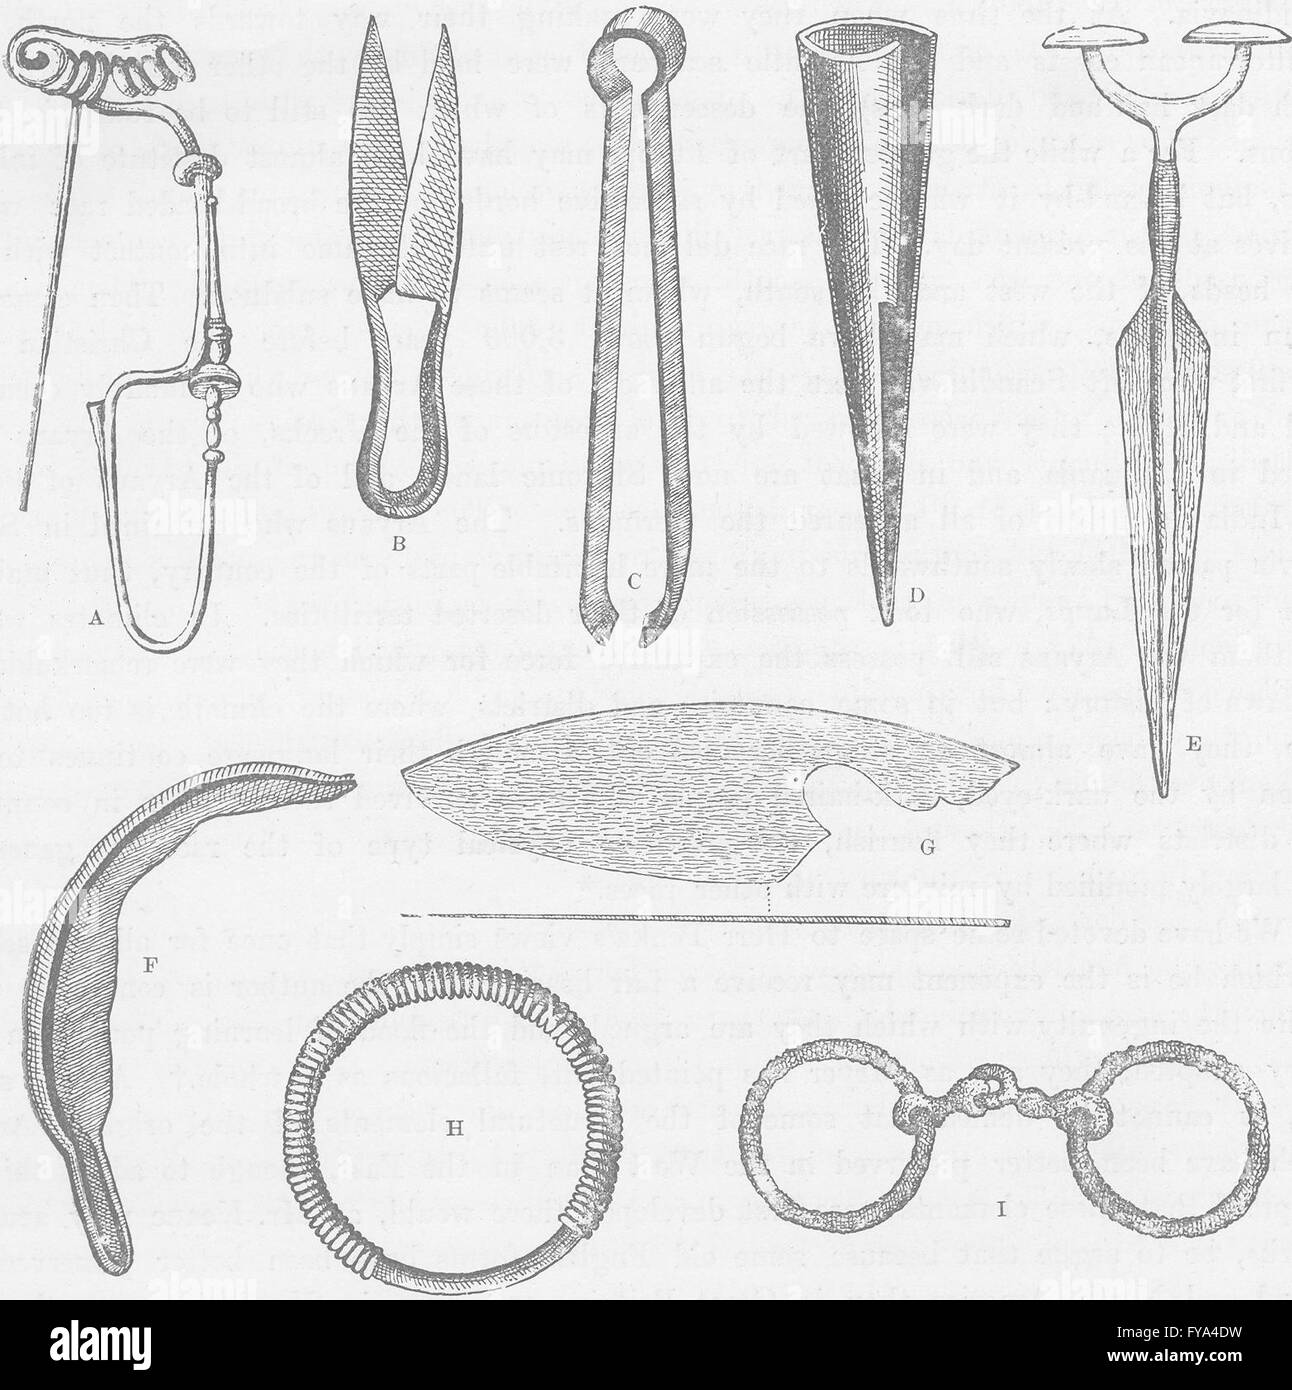 Eisenzeit: Werkzeuge, Waffen und Schmuck für die frühe Eisenzeit, alte  drucken 1893 Stockfotografie - Alamy